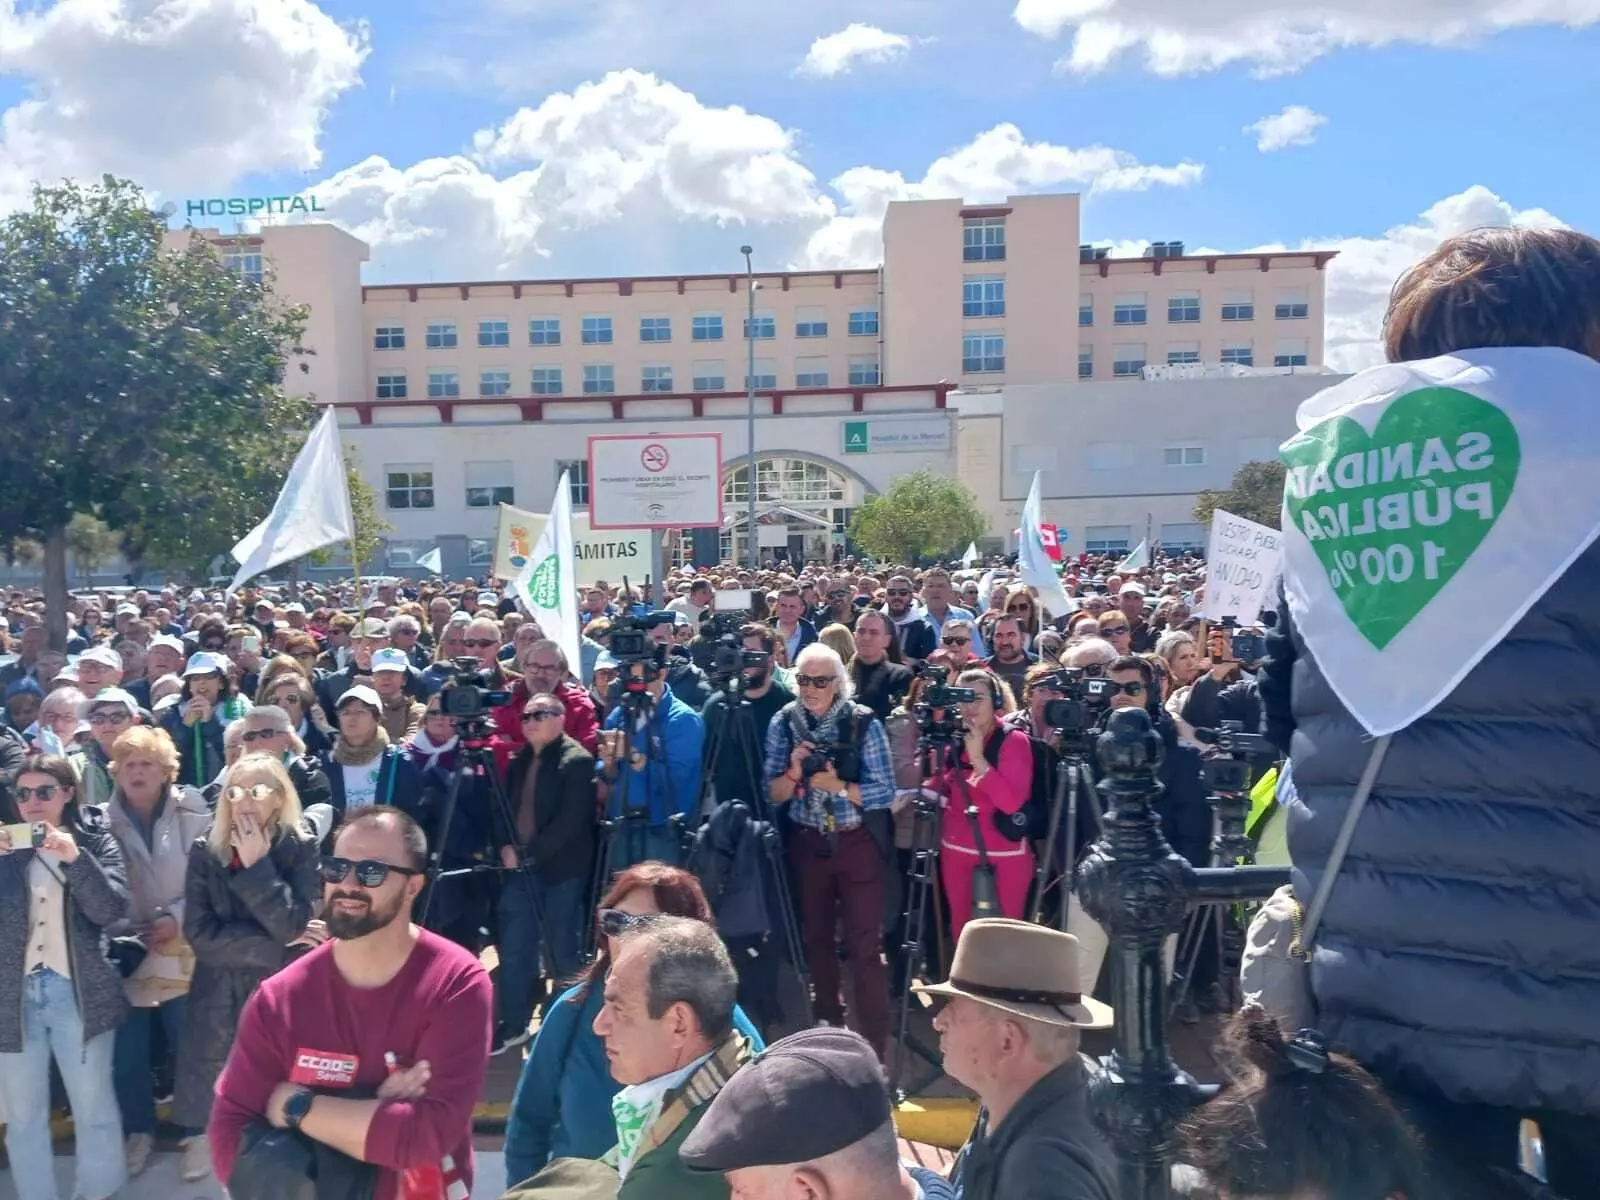 La sanidad pÃºblica, en estado de "abandono": movilizaciones y protestas sin fin en una comarca de Sevilla